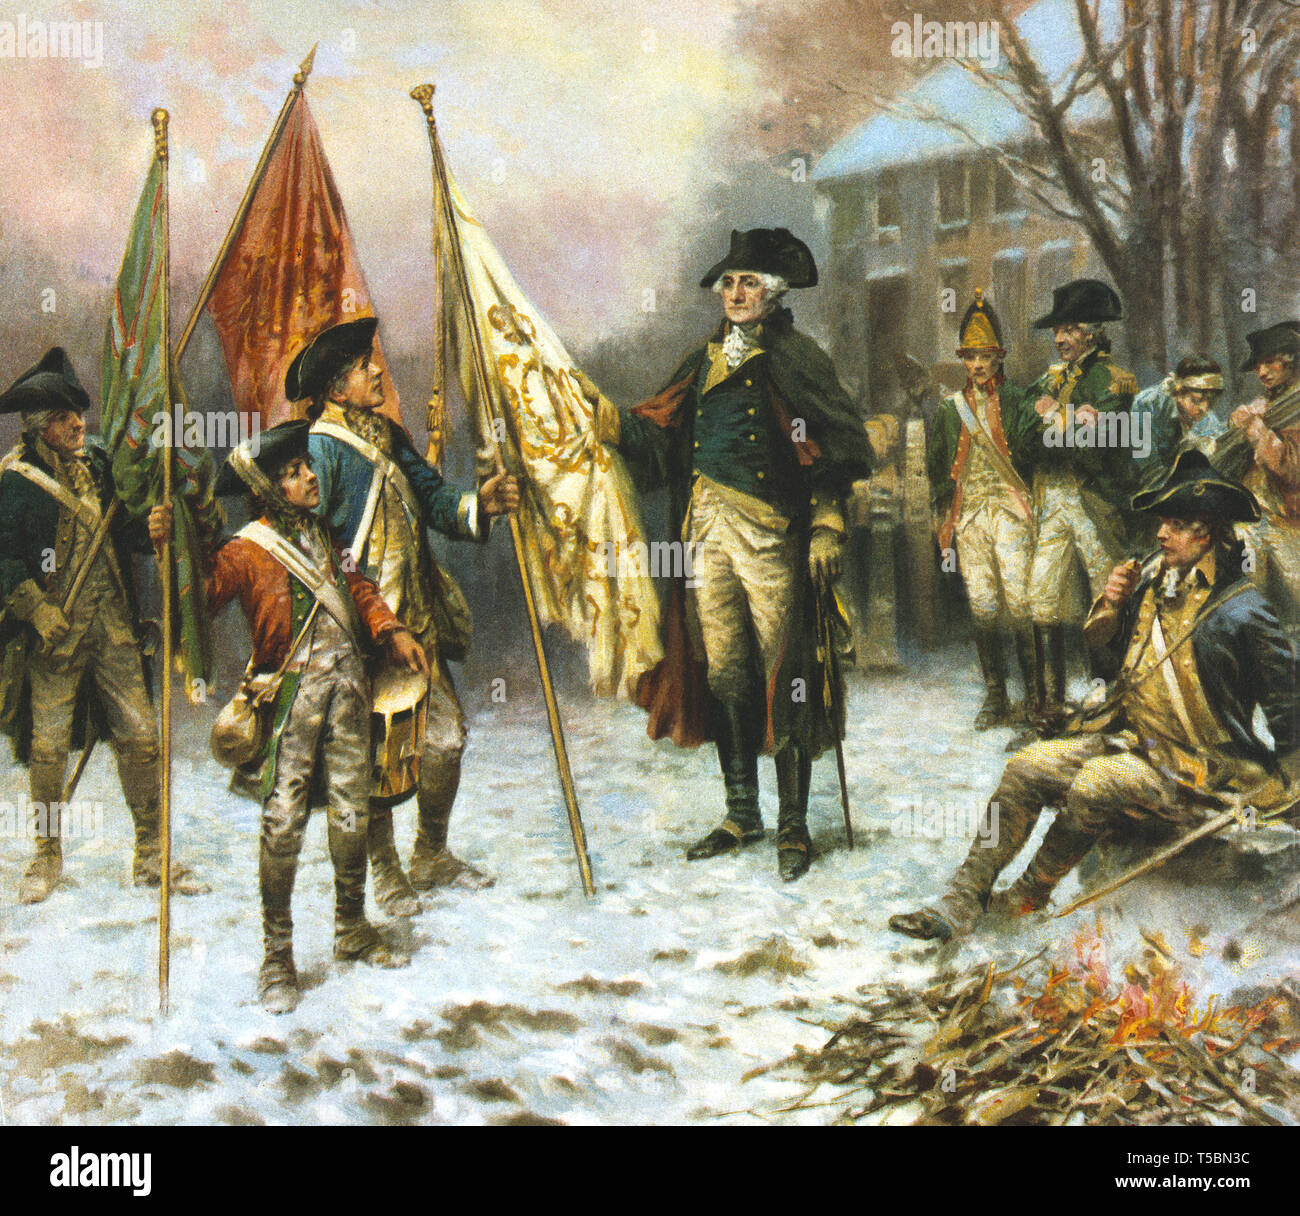 Le général George Washington debout avec groupe de soldats à la recherche de drapeaux capturés dans les Britanniques pendant la bataille de Trenton, 1776, lithographie par Hayes Litho de Co pour une peinture par Percy Moran, 1914 Banque D'Images